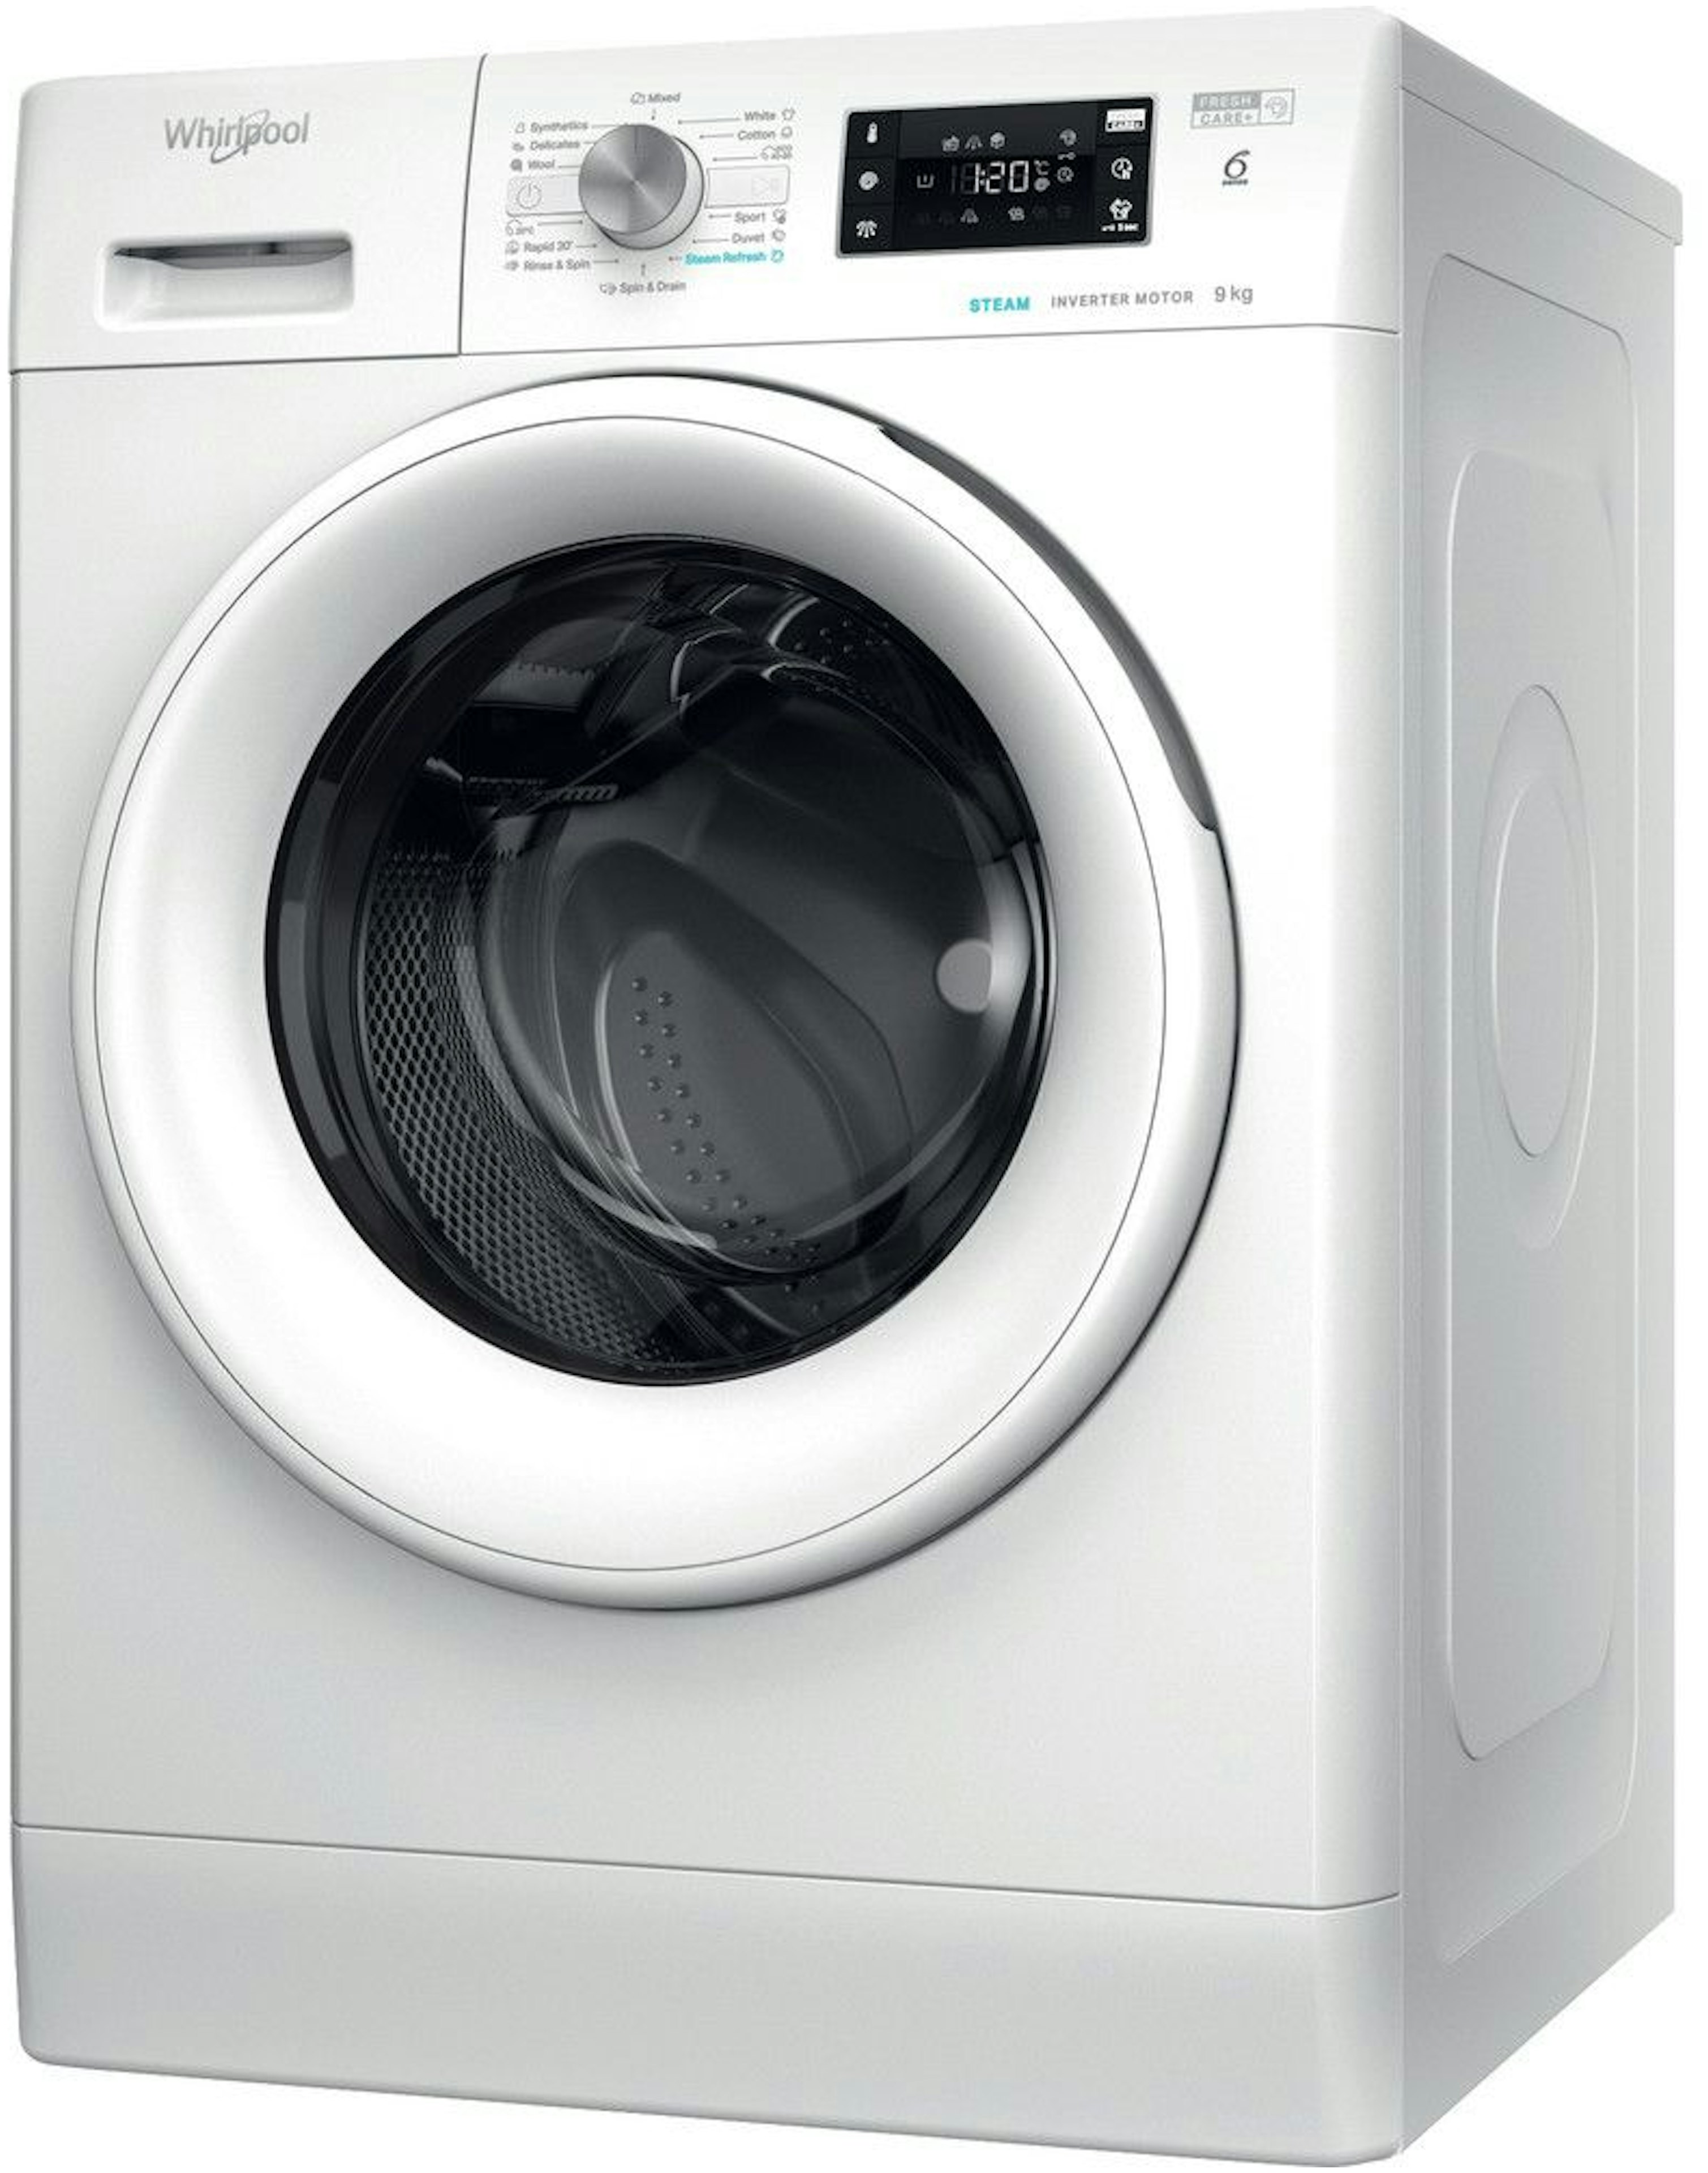 Whirlpool wasmachine FFB 9489 WV EE afbeelding 3